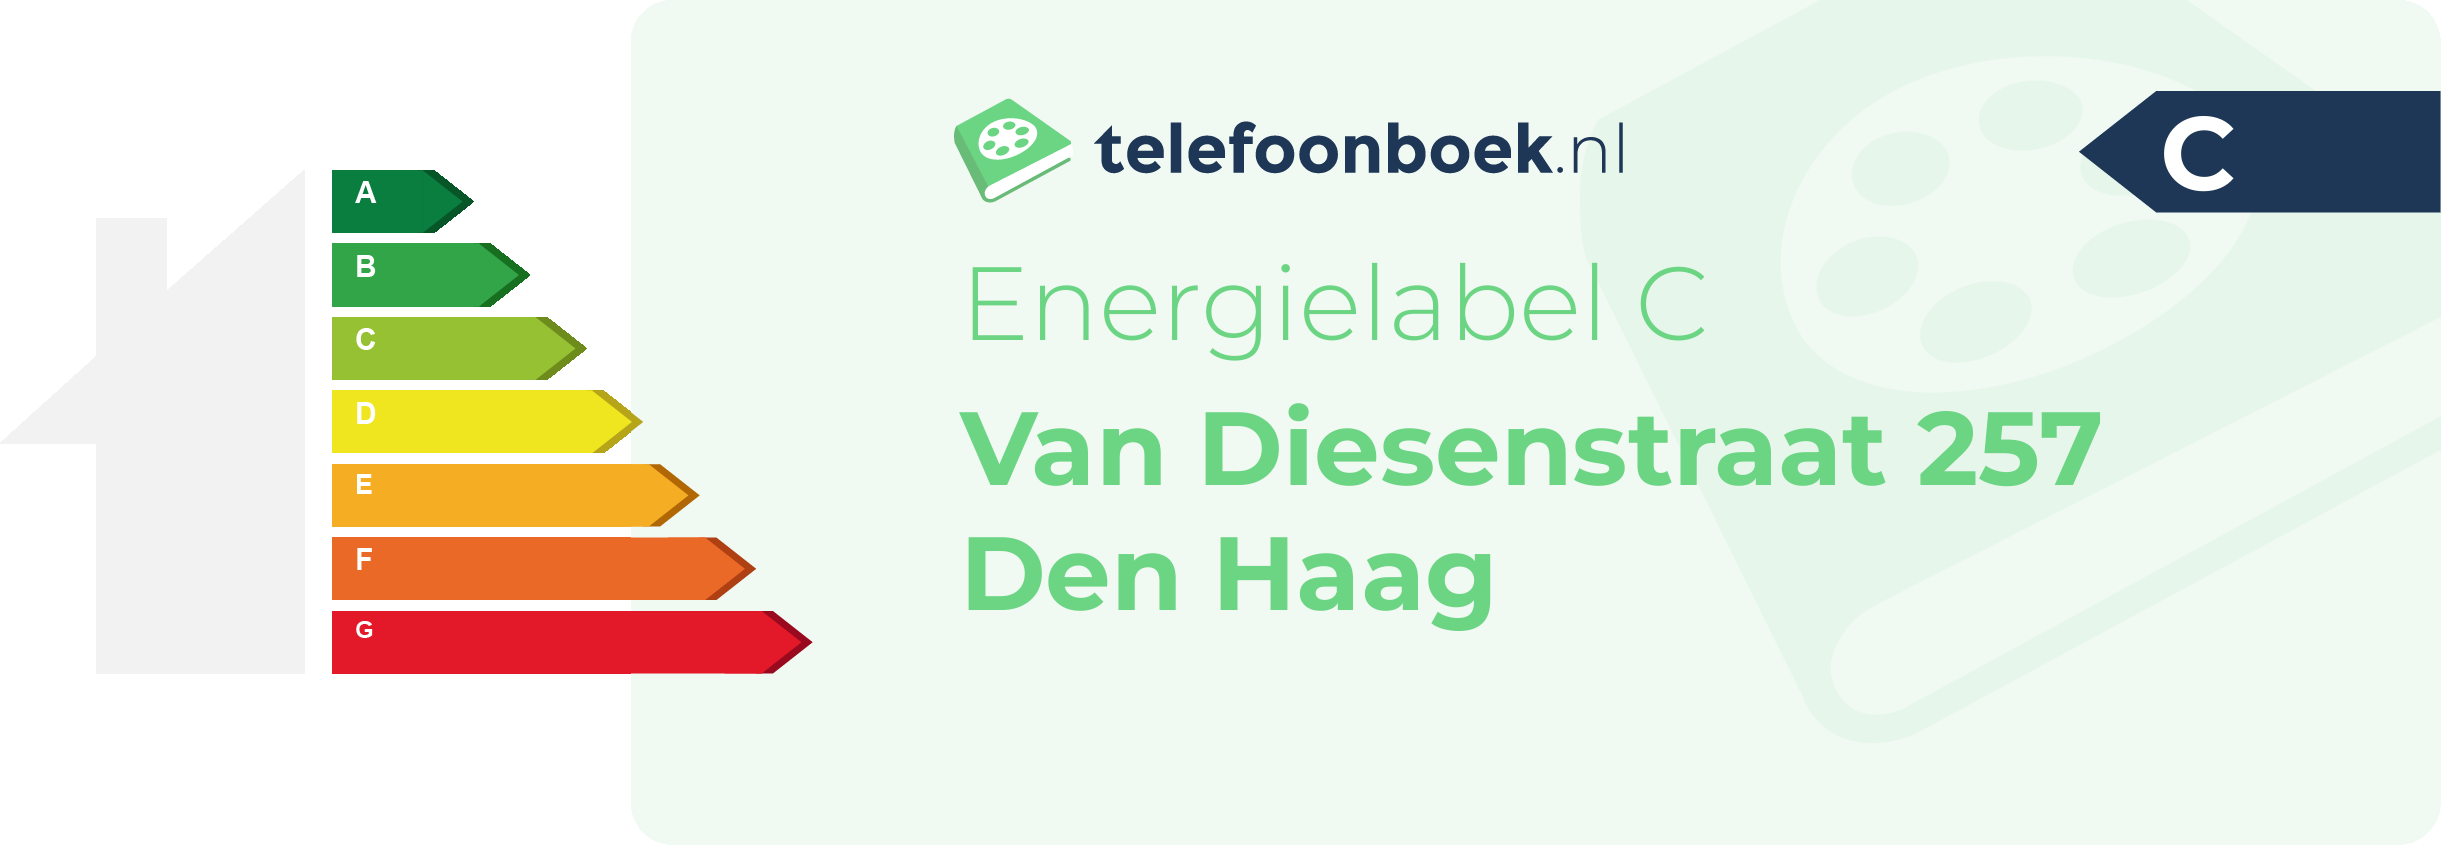 Energielabel Van Diesenstraat 257 Den Haag